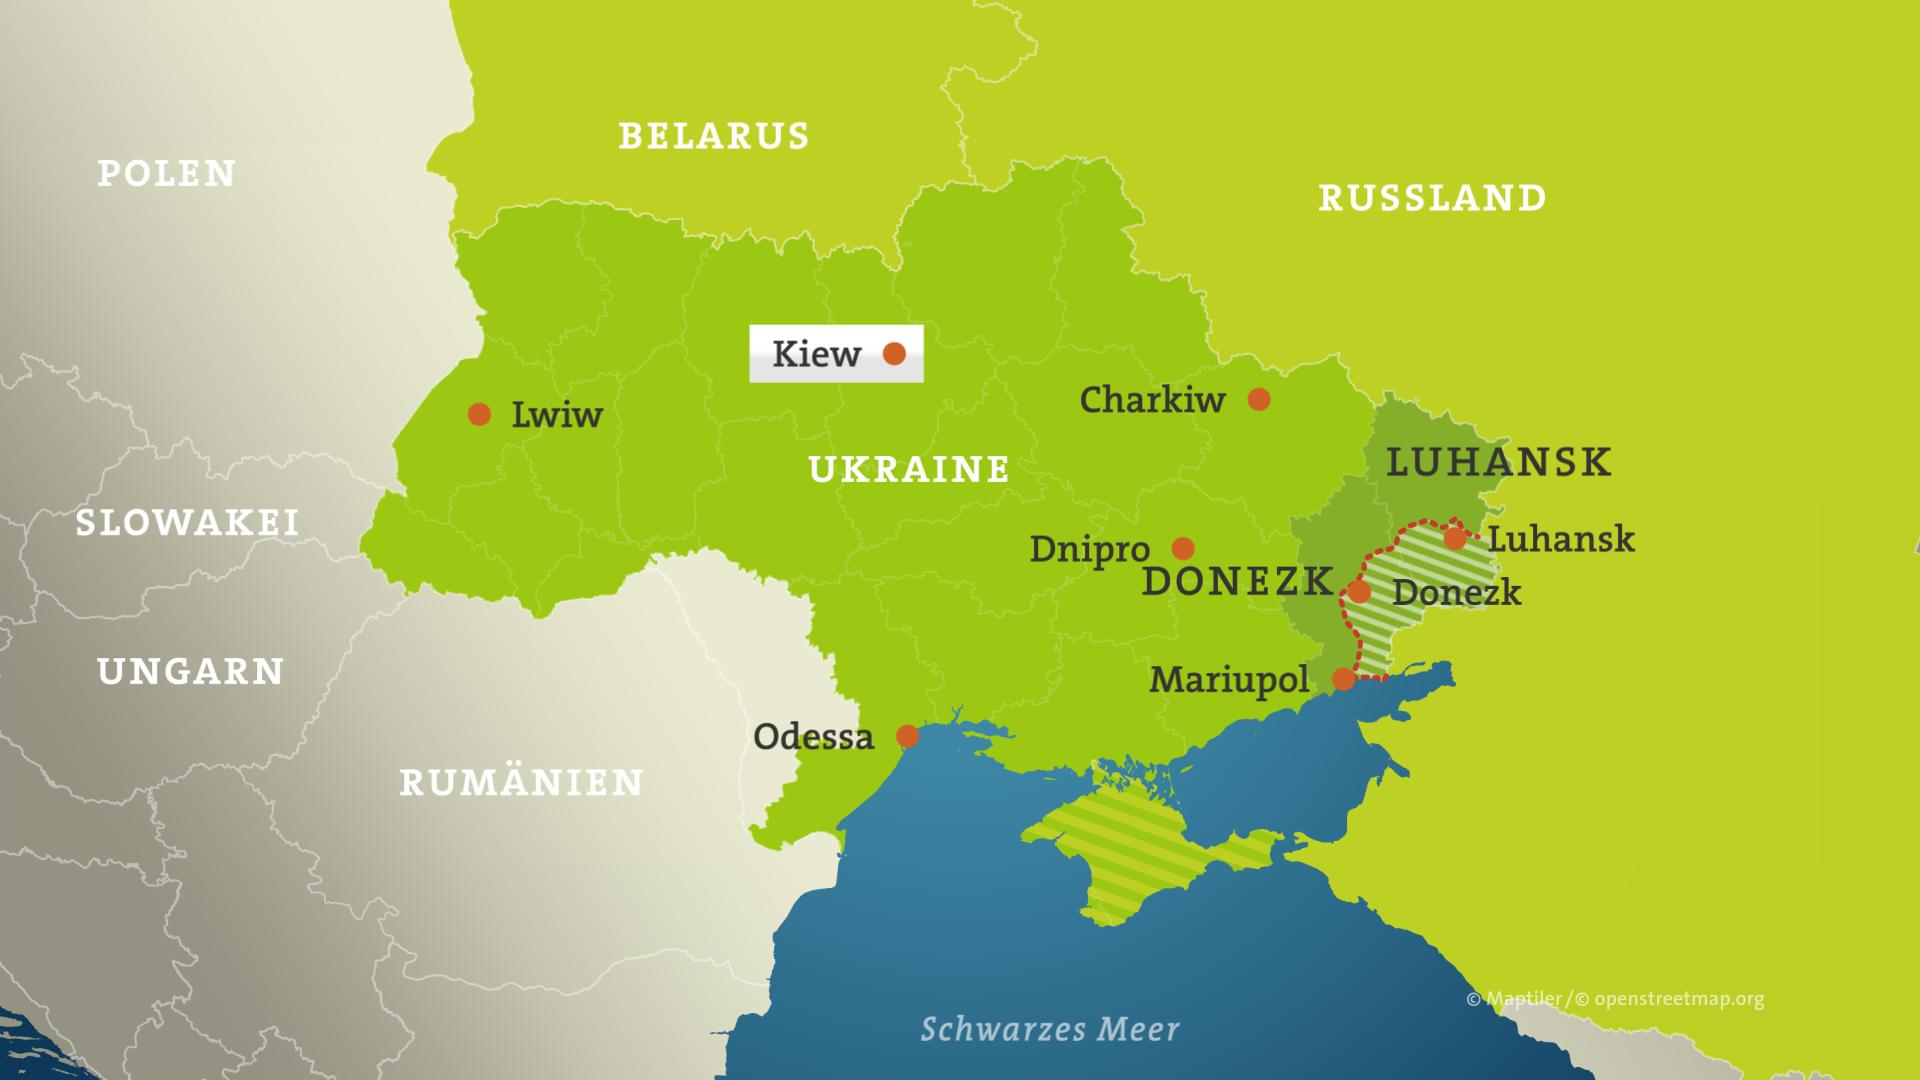 Die Karte zeigt die Ukraine mit Donezk und Luhansk und den Separatistengebieten und Städte